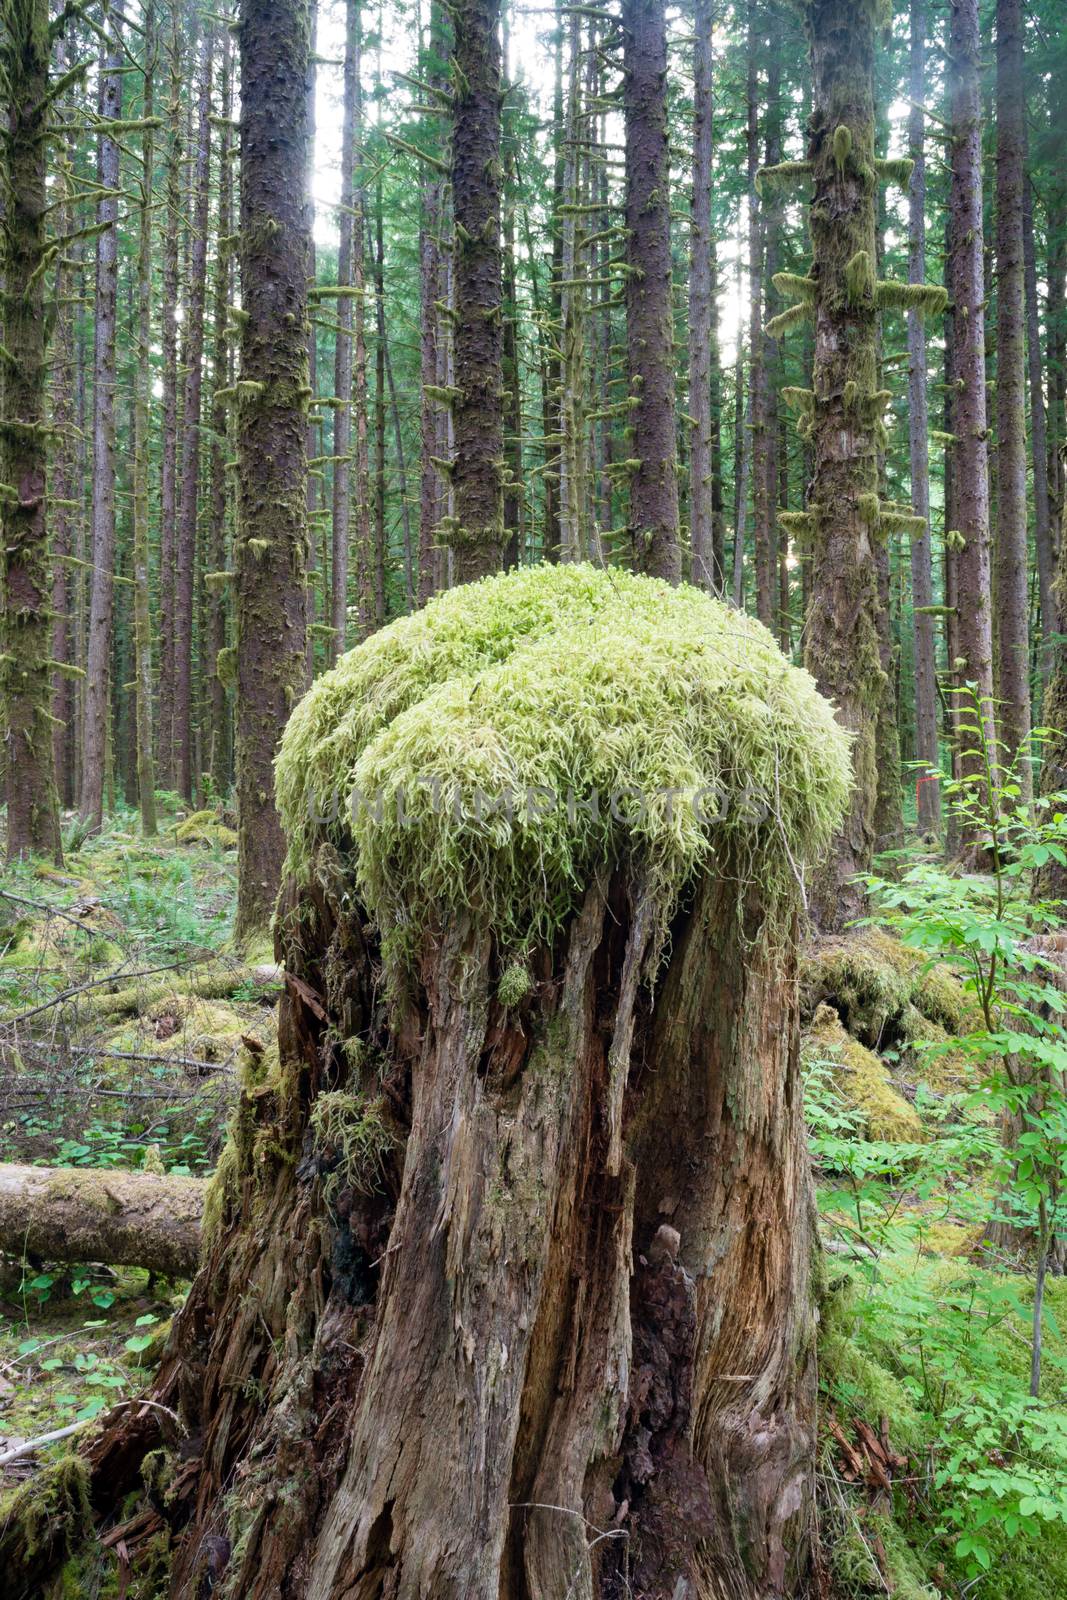 Hoh Rainforest Spruce Hemlock Cedar Trees Fern Groundcover by ChrisBoswell